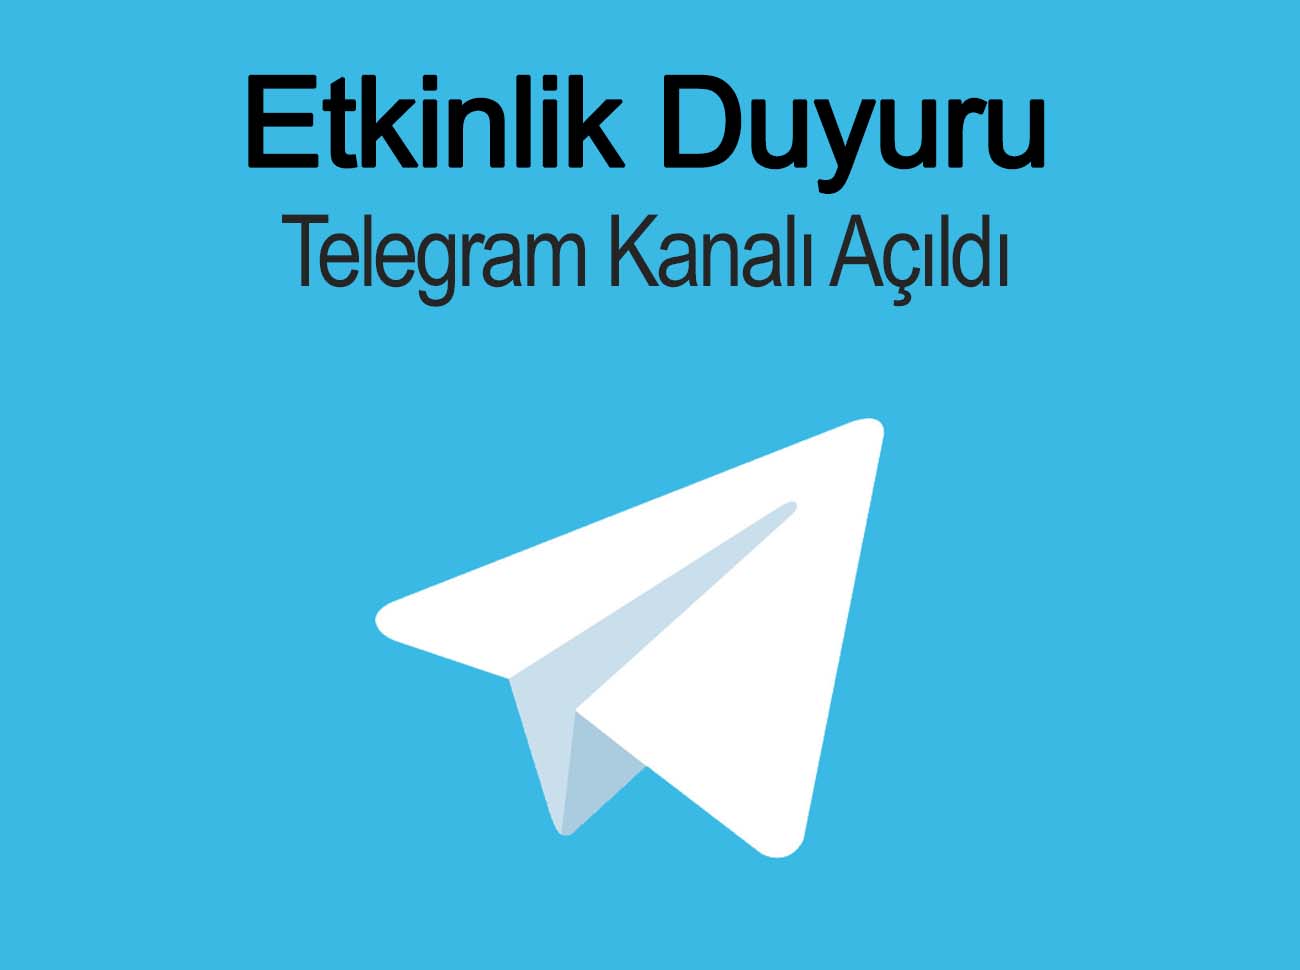 Etkinlik Duyuru Telegram Kanalı